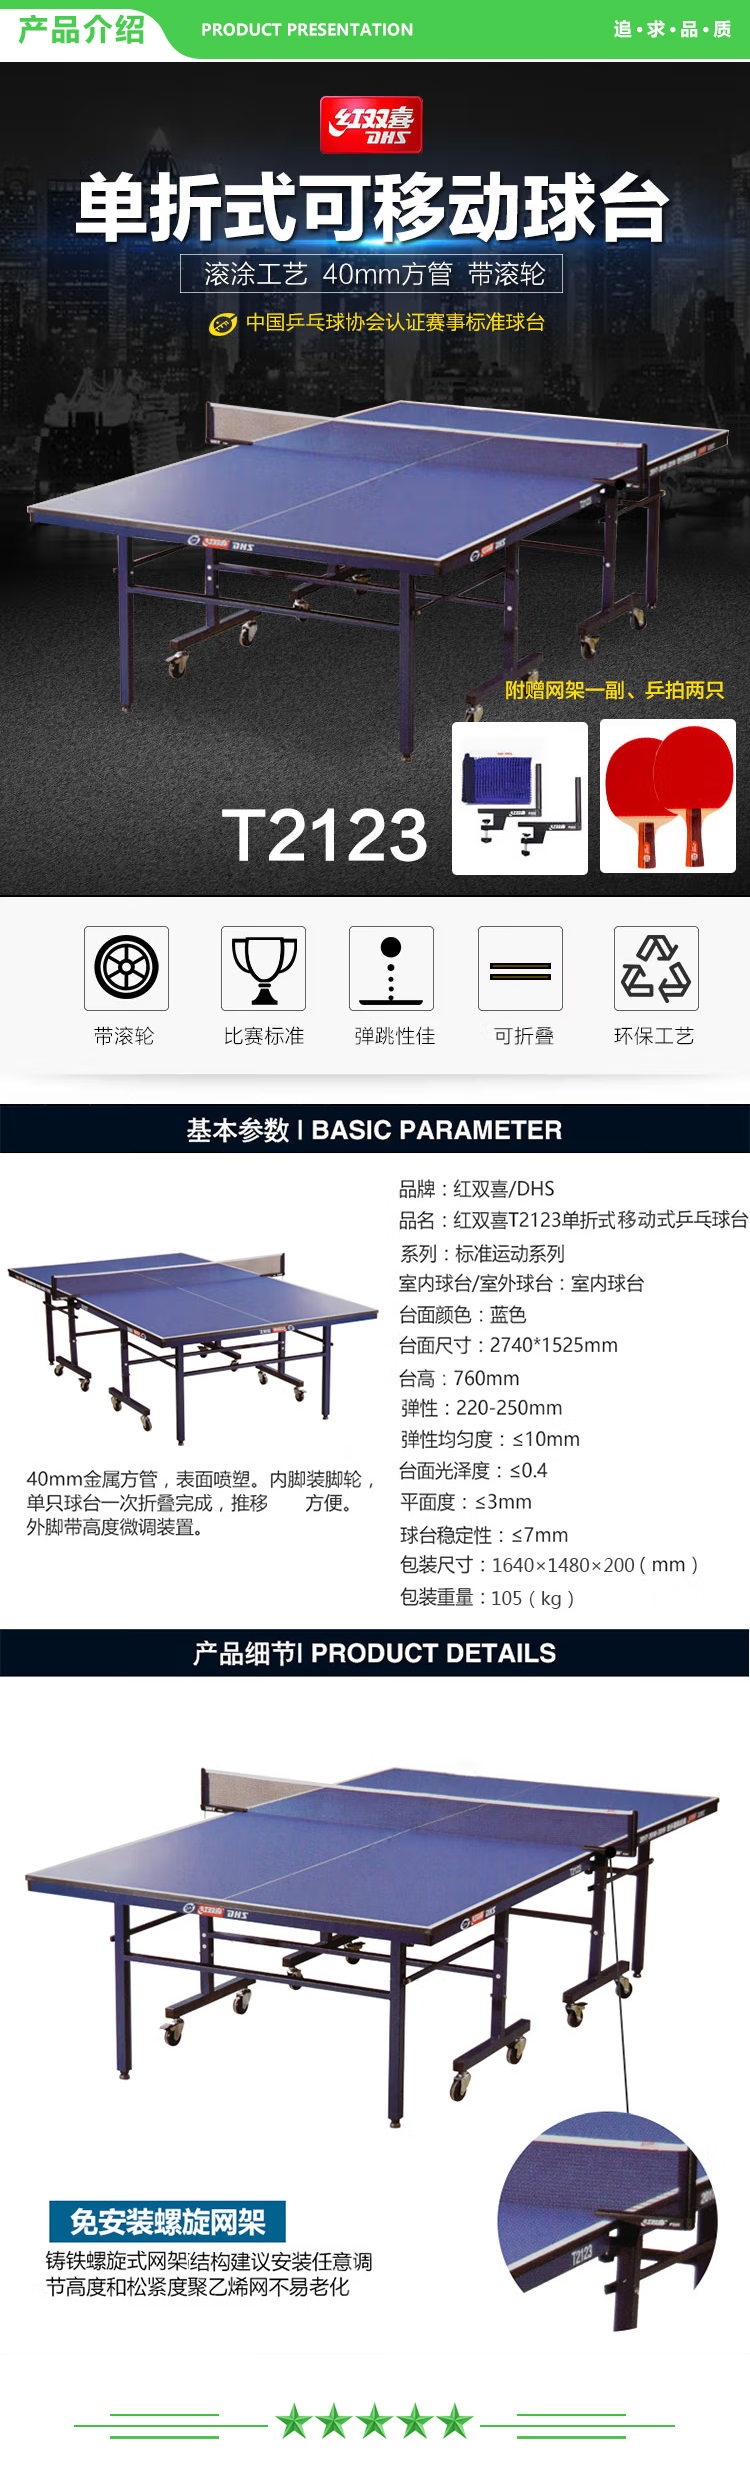 红双喜 DHS DXBC009-1(T2123) 乒乓球桌单折式室内乒乓球台训练比赛用乒乓球案子 含网架-球拍-乒乓球  (2).jpg